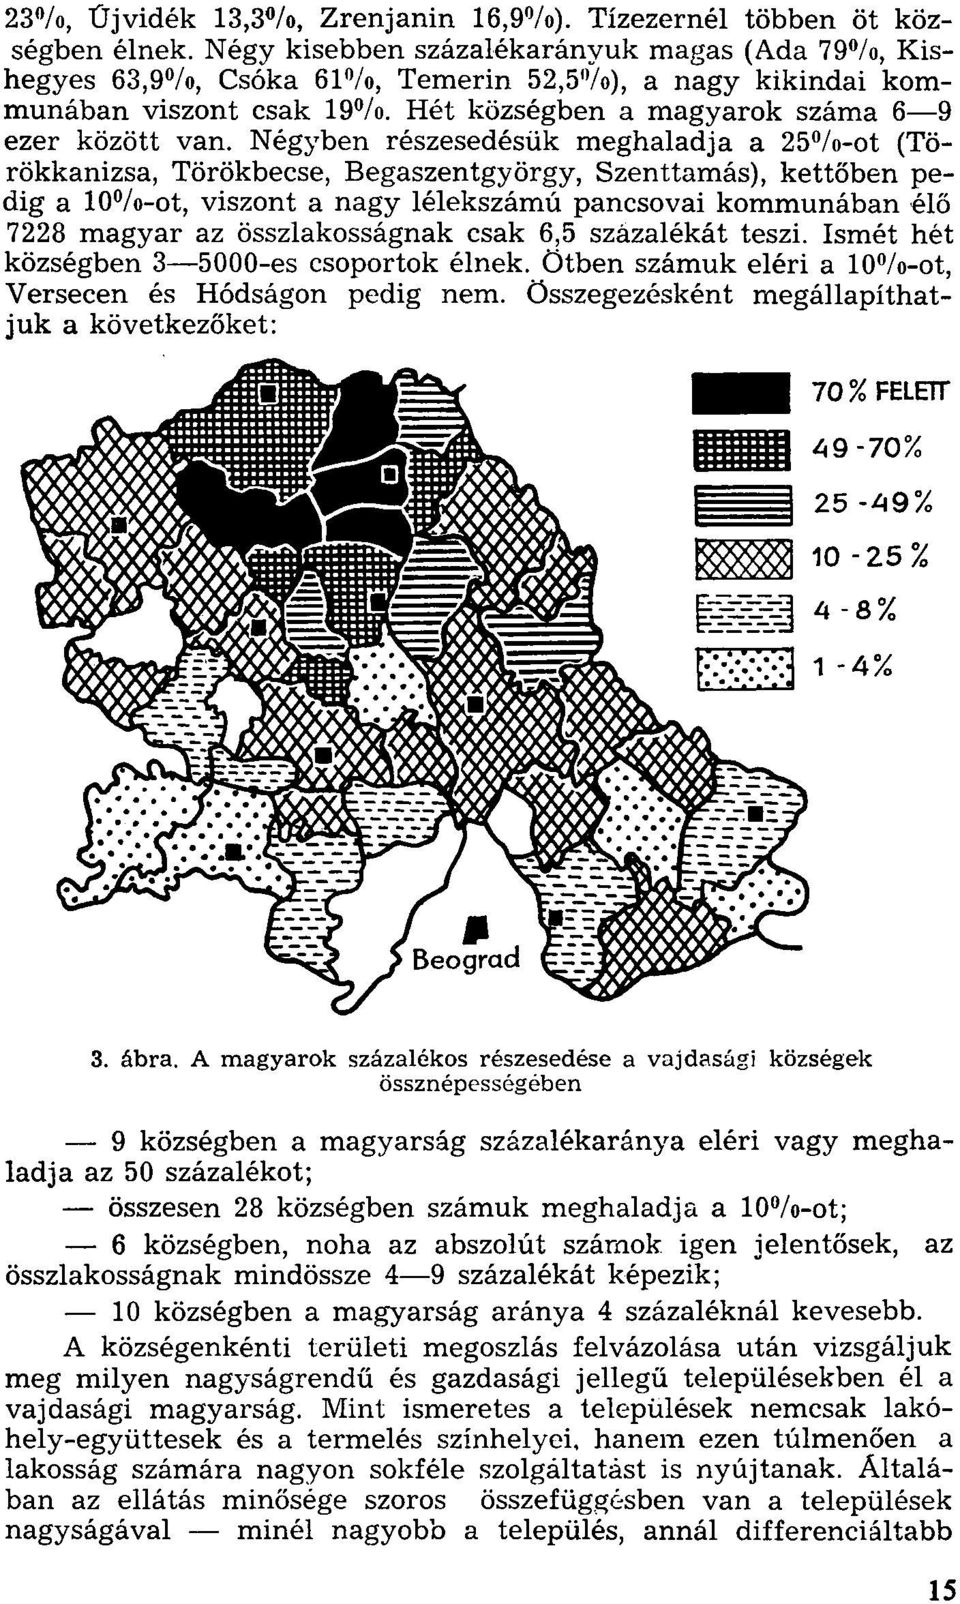 Négyben részesedésük meghaladja a 25%-ot (Törökkanizsa, Törökbecse, Begaszentgyörgy, Szenttamás), kettőben pedig a 10%-ot, viszont a nagy lélekszámú pancsovai kommunában élő 7228 magyar az